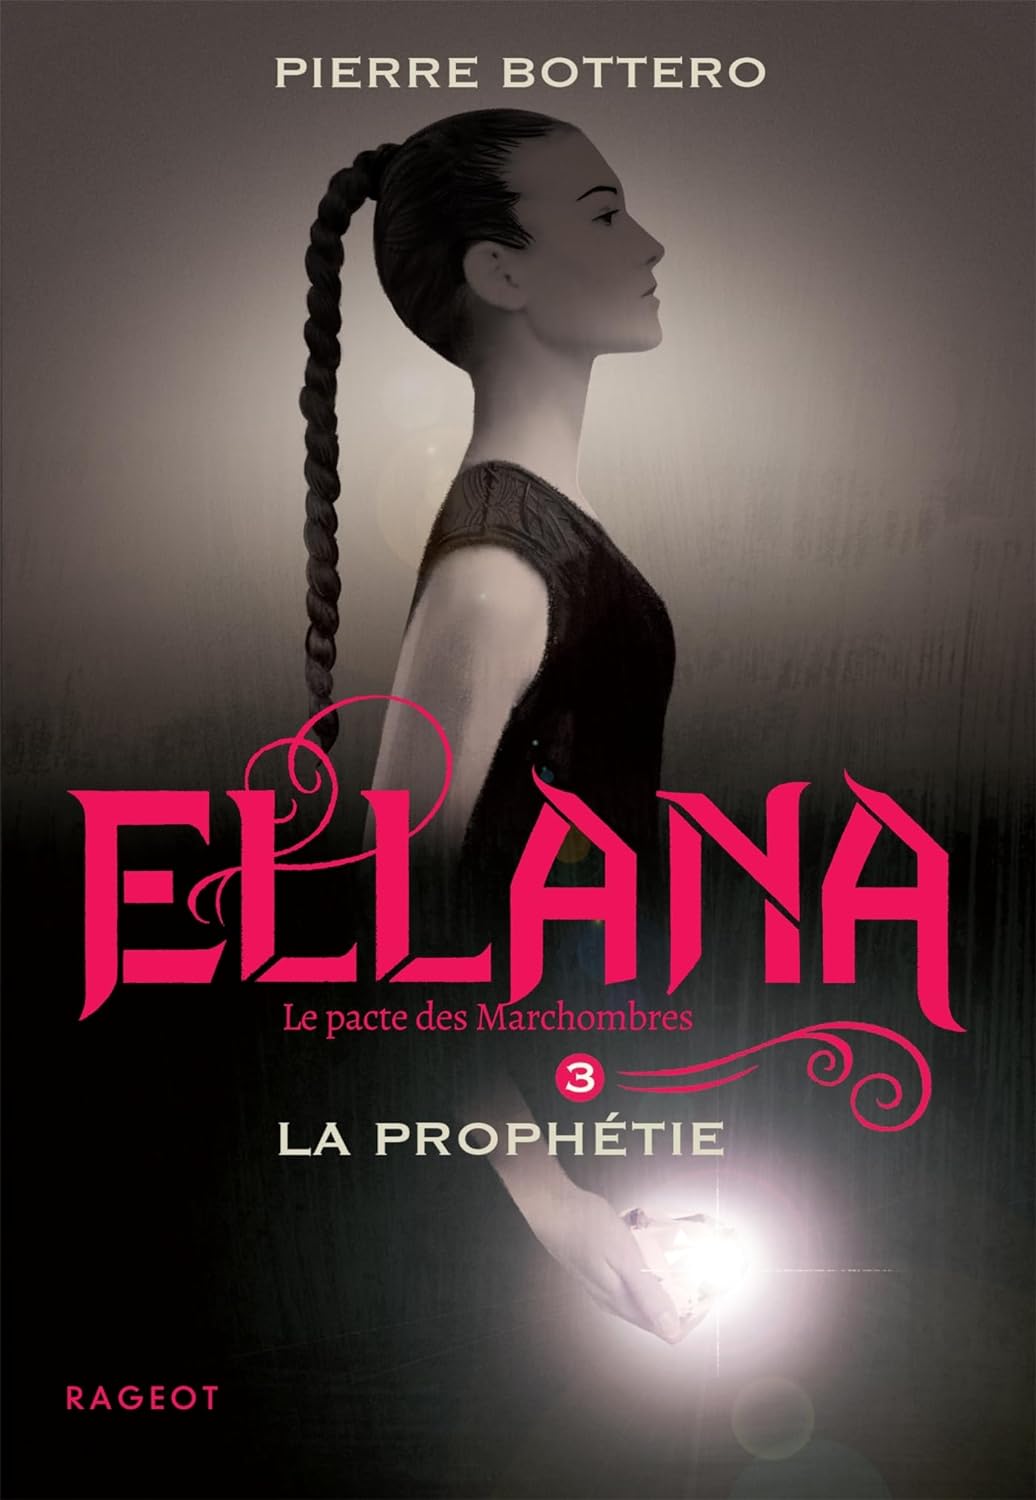 Pierre Bottero: ellana 3 (Paperback, français language, Rageot Editeur)